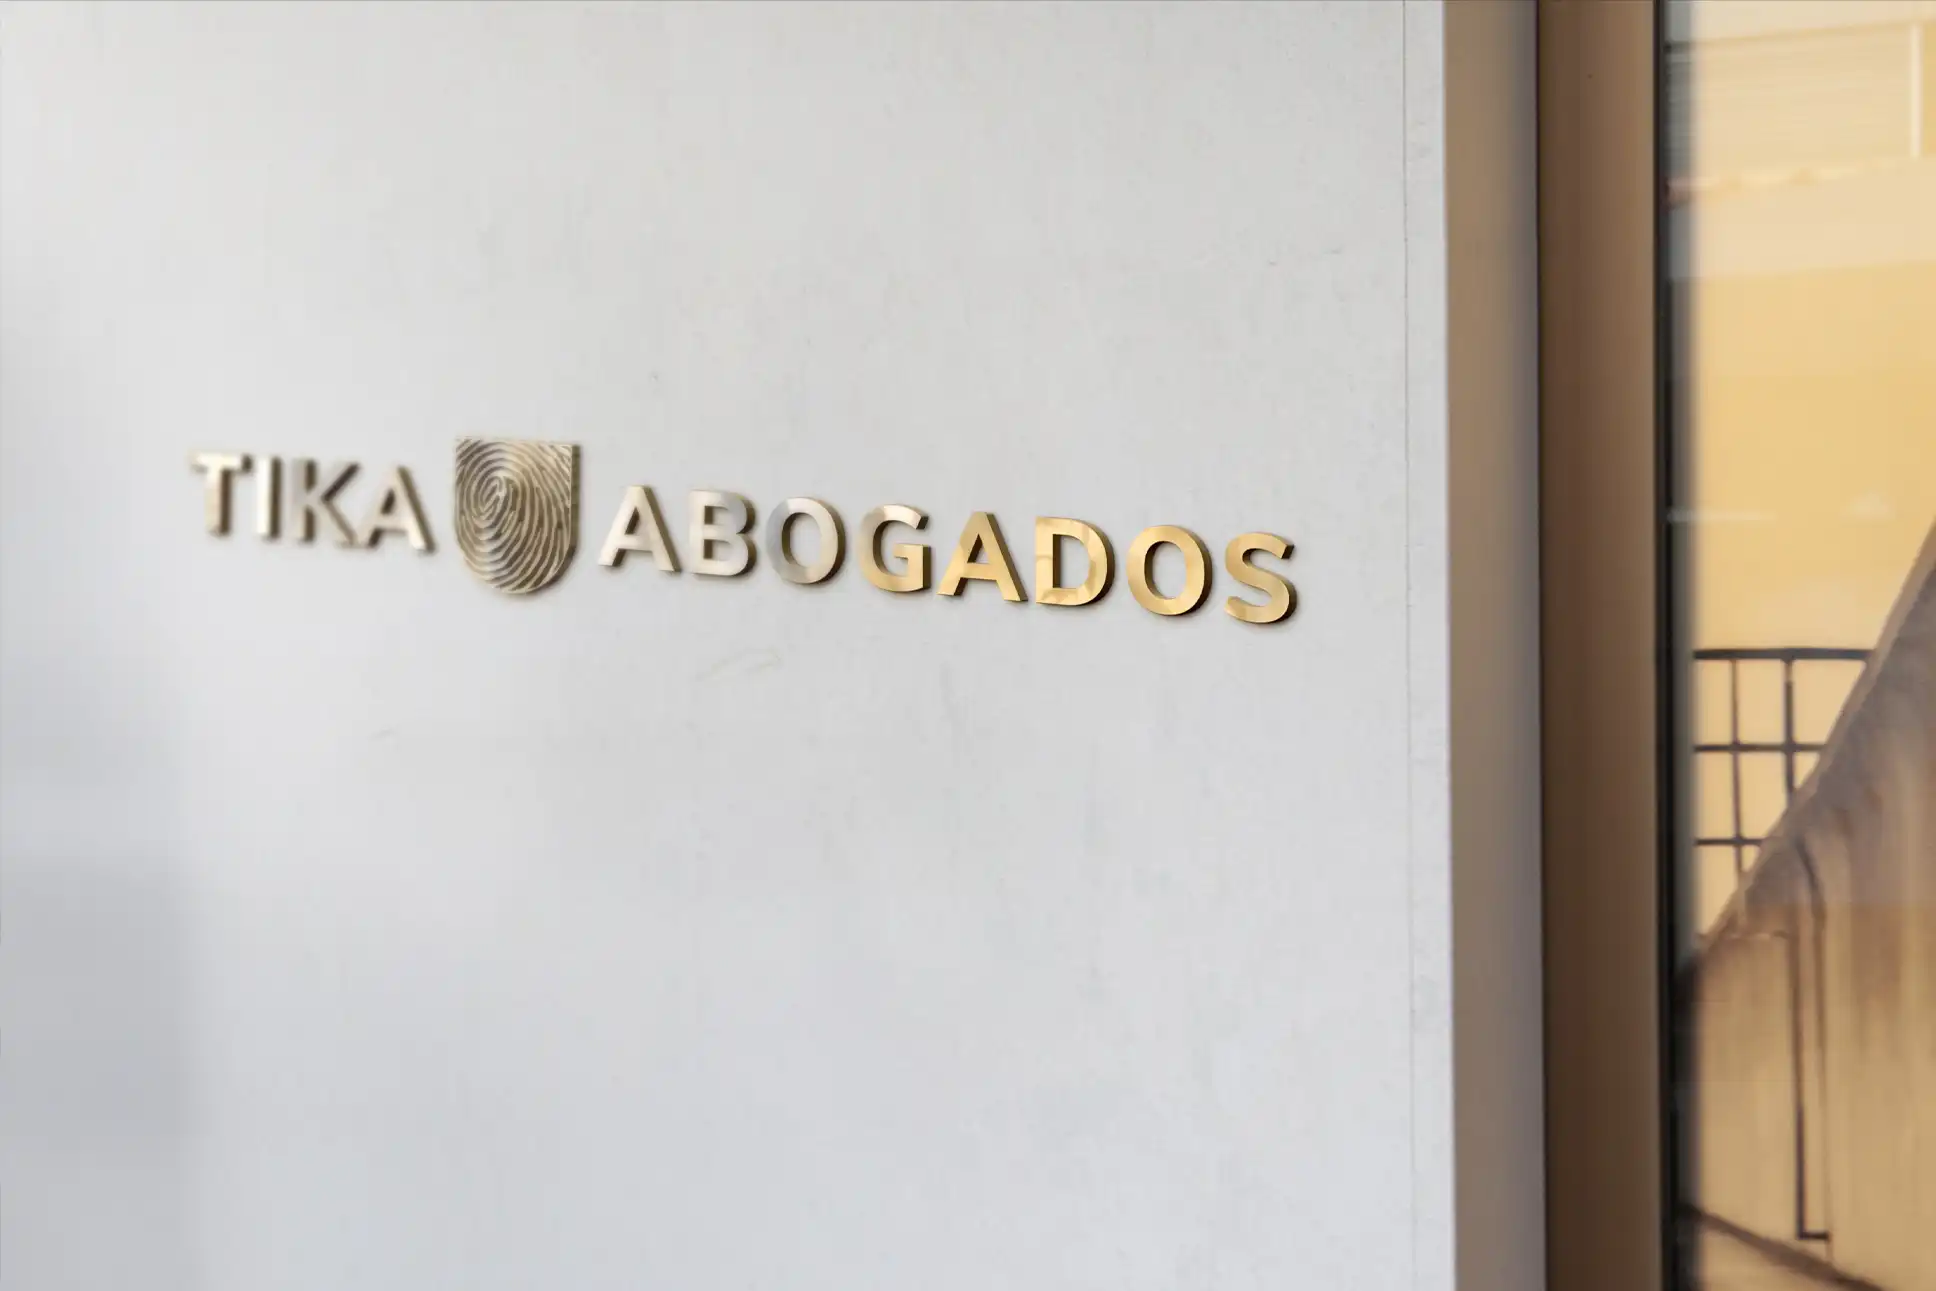 Tika Abogados company logo